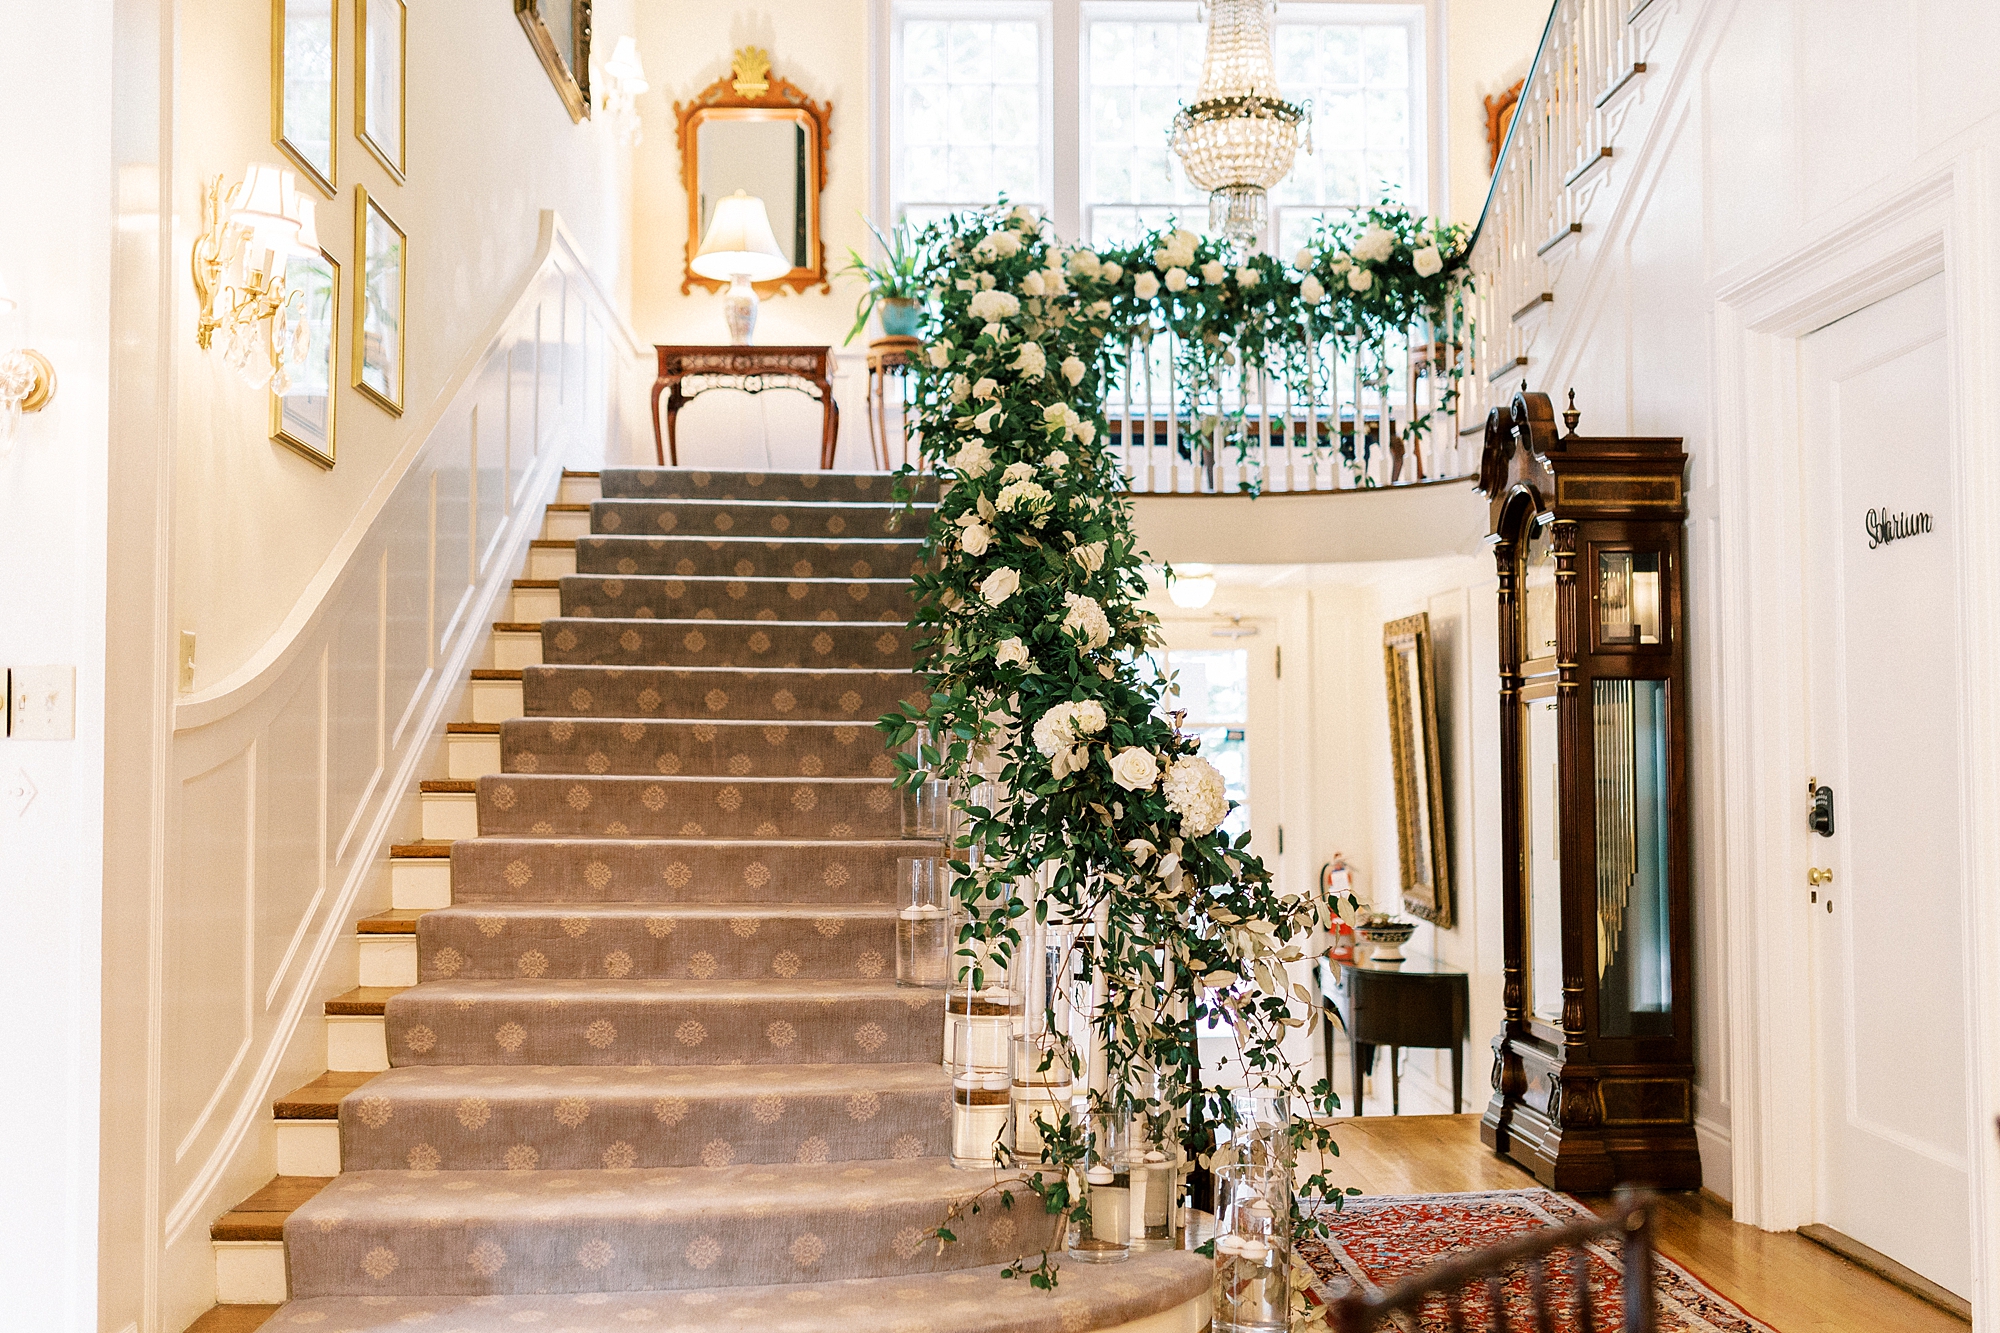 white flowers line staircase inside the Morehead Inn